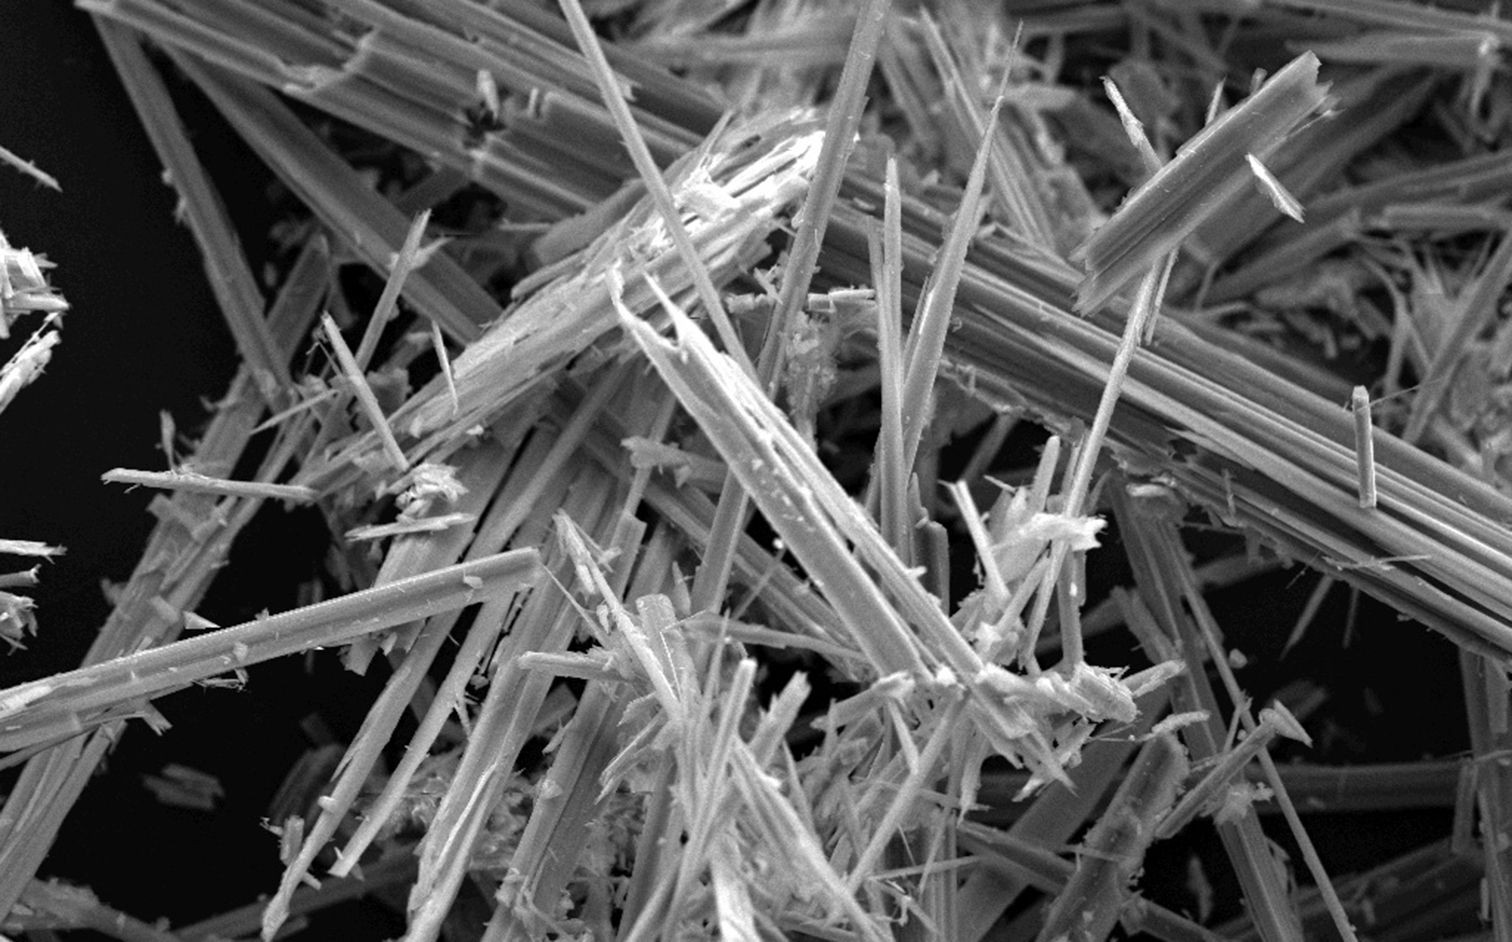 Elektronenmikroskopische Aufnahme von Asbestfasern